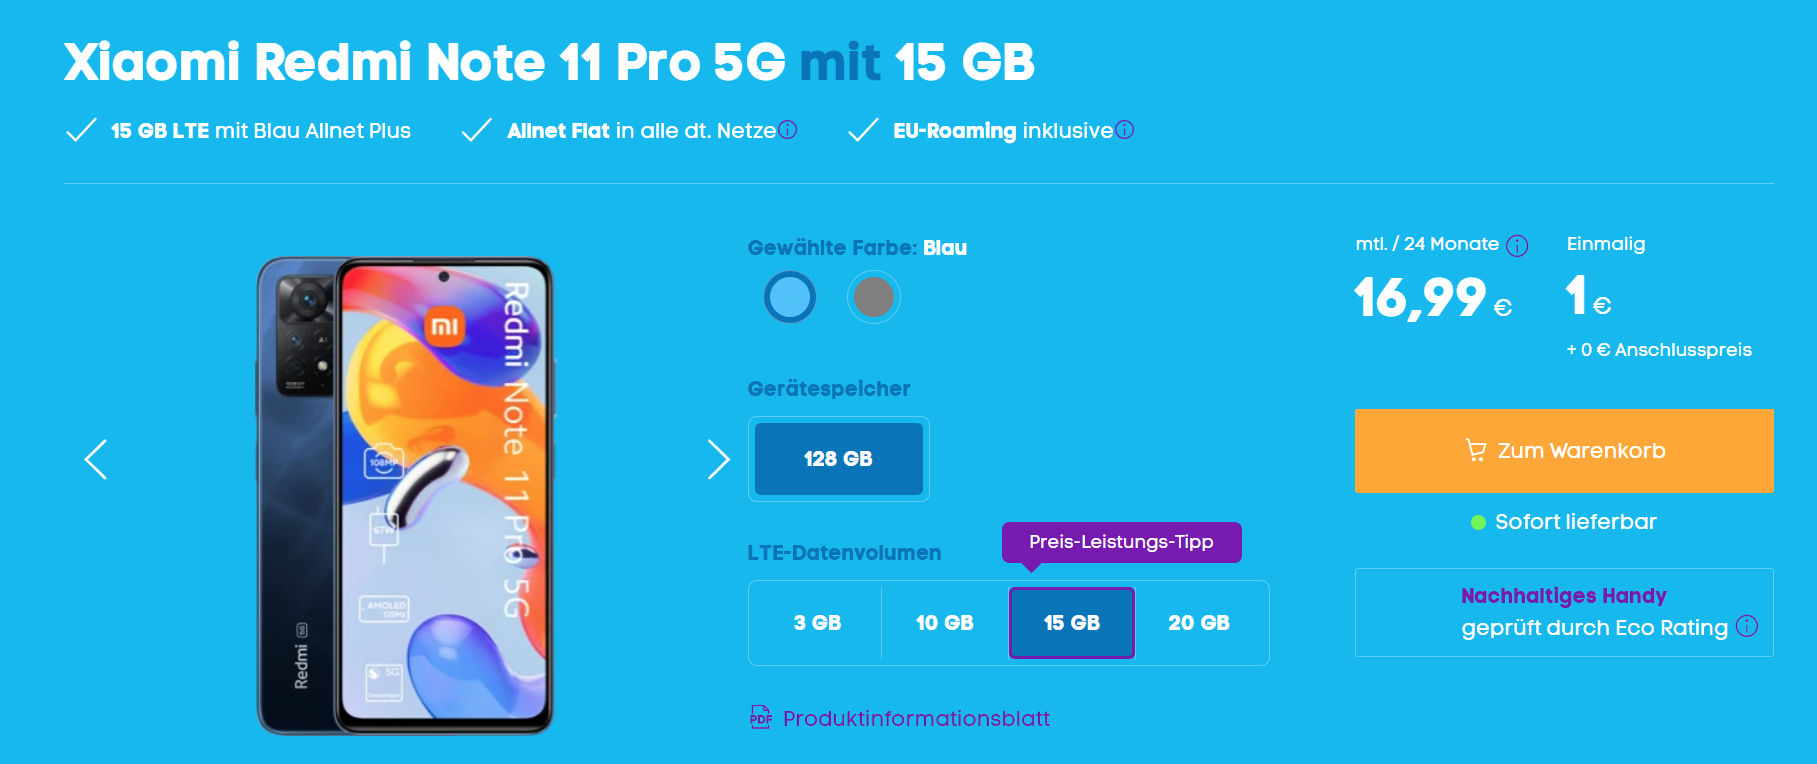 Xiaomi Redmi Note 11 Pro 5G Vertrag